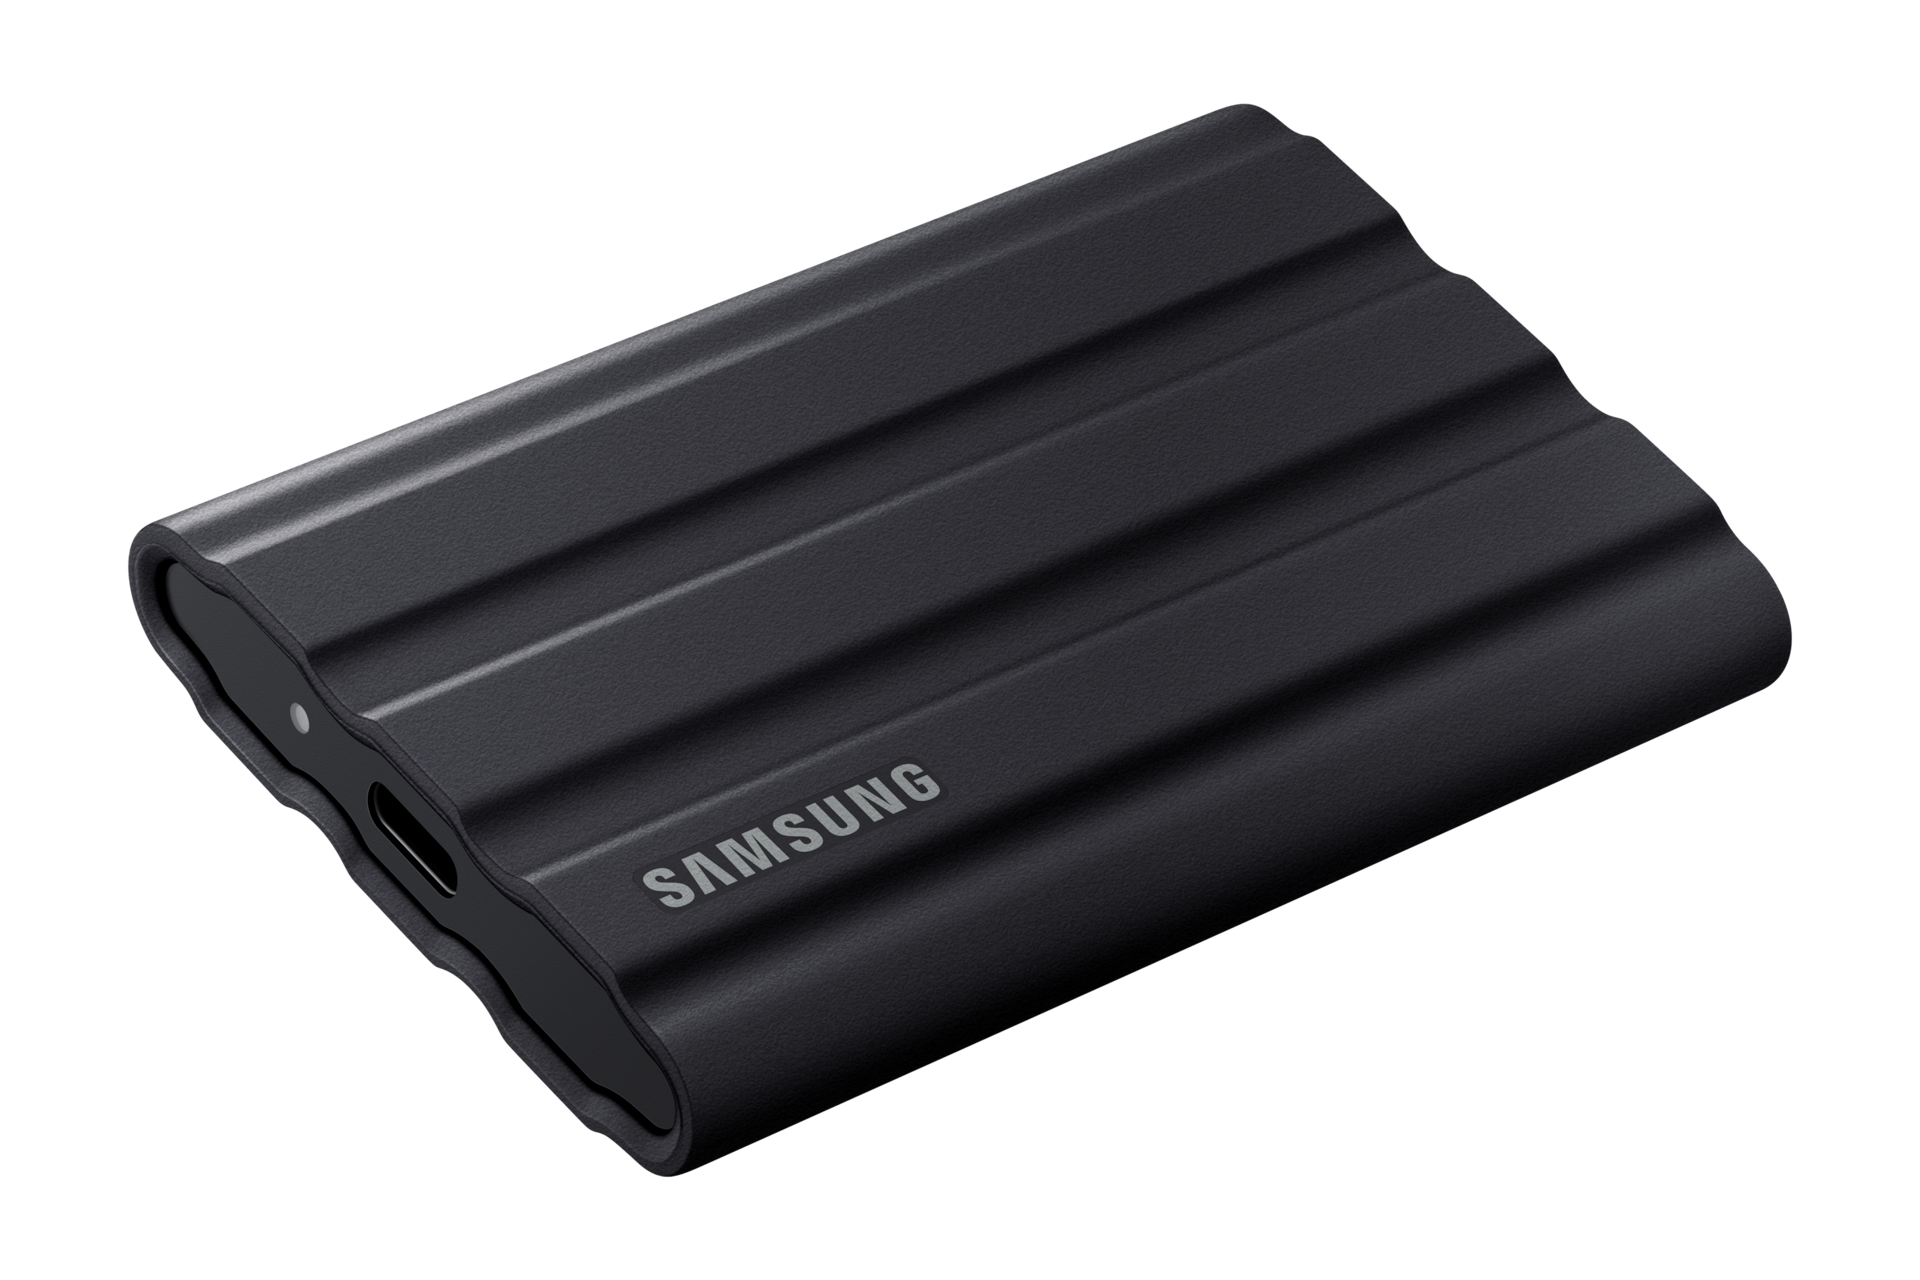 외장 SSD T7 Shield USB 3.2 Gen 2 4 TB 블랙 제품 눕혀져 있는 모습 뒷쪽 45도